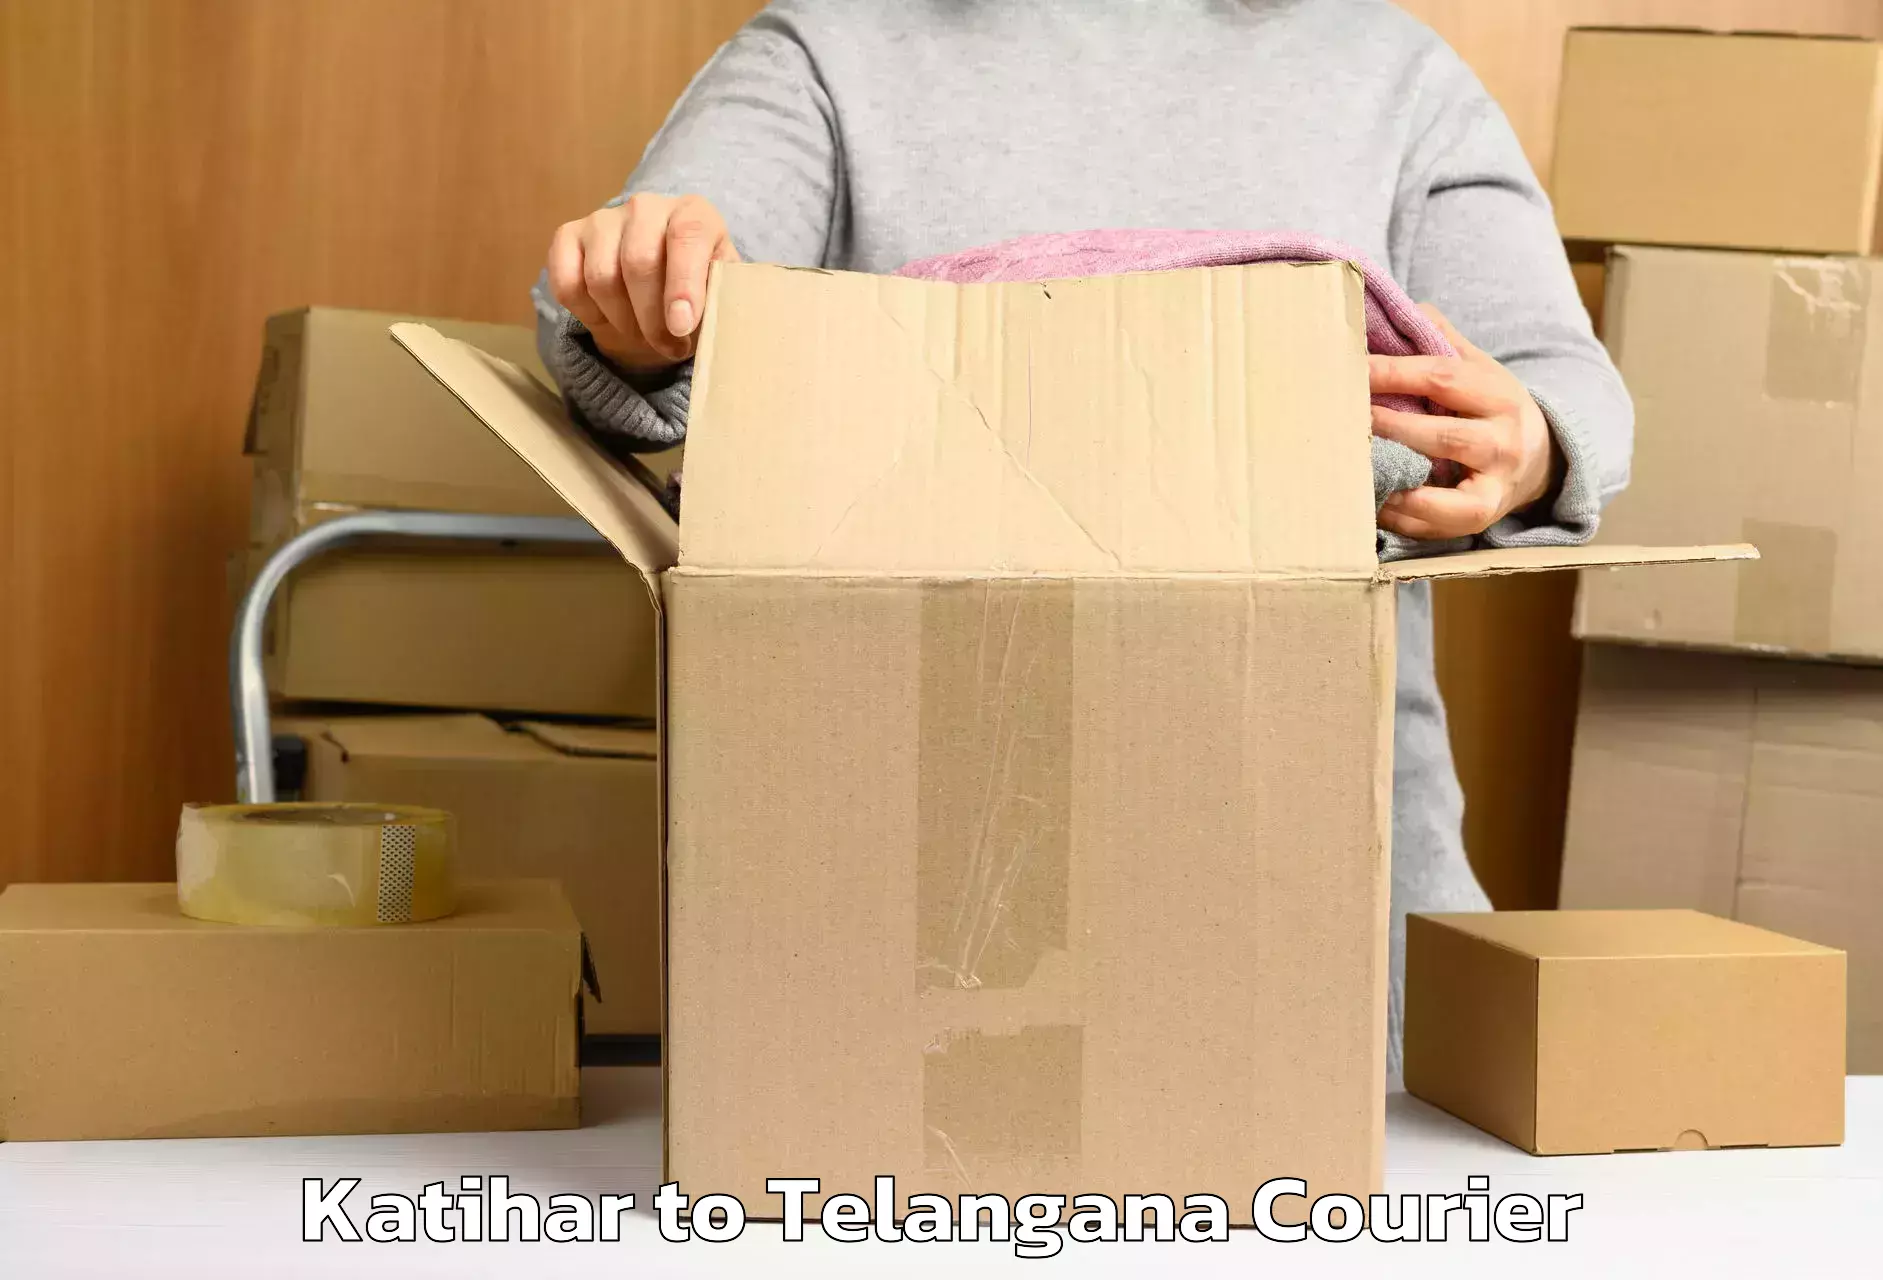 Holiday season luggage delivery Katihar to Kakeshwaram